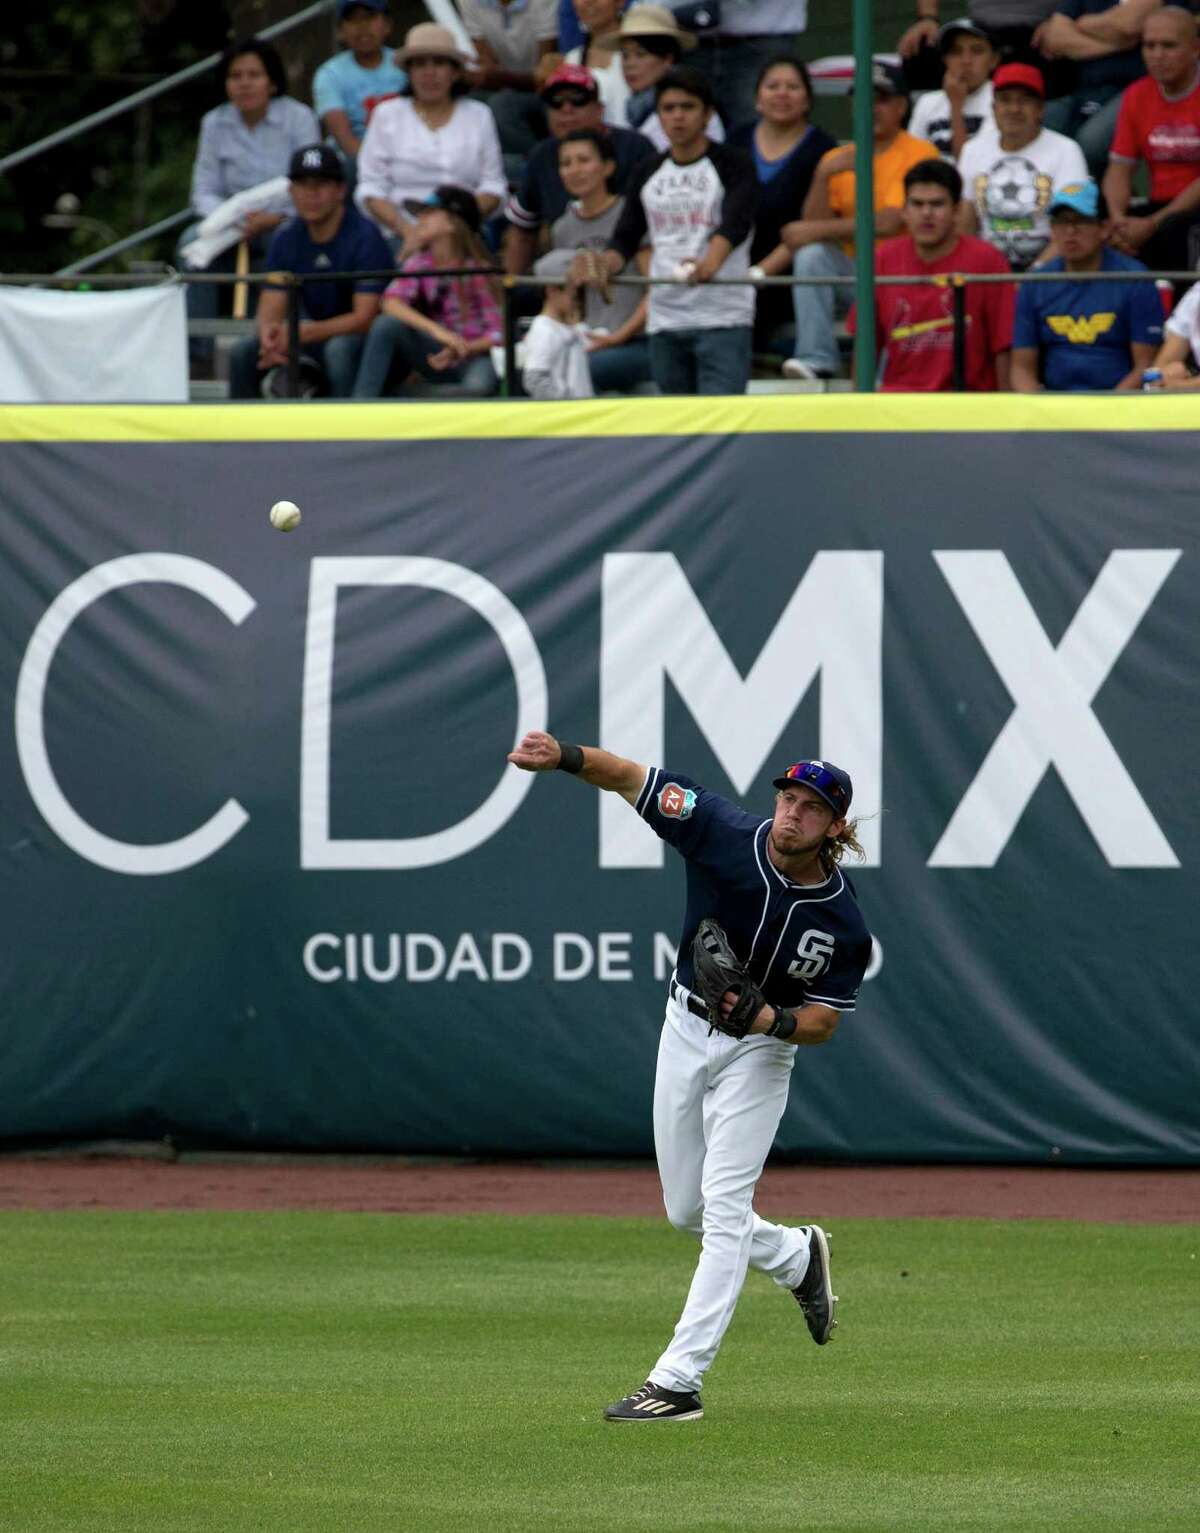 Mexico City: Padres 21, Astros 6